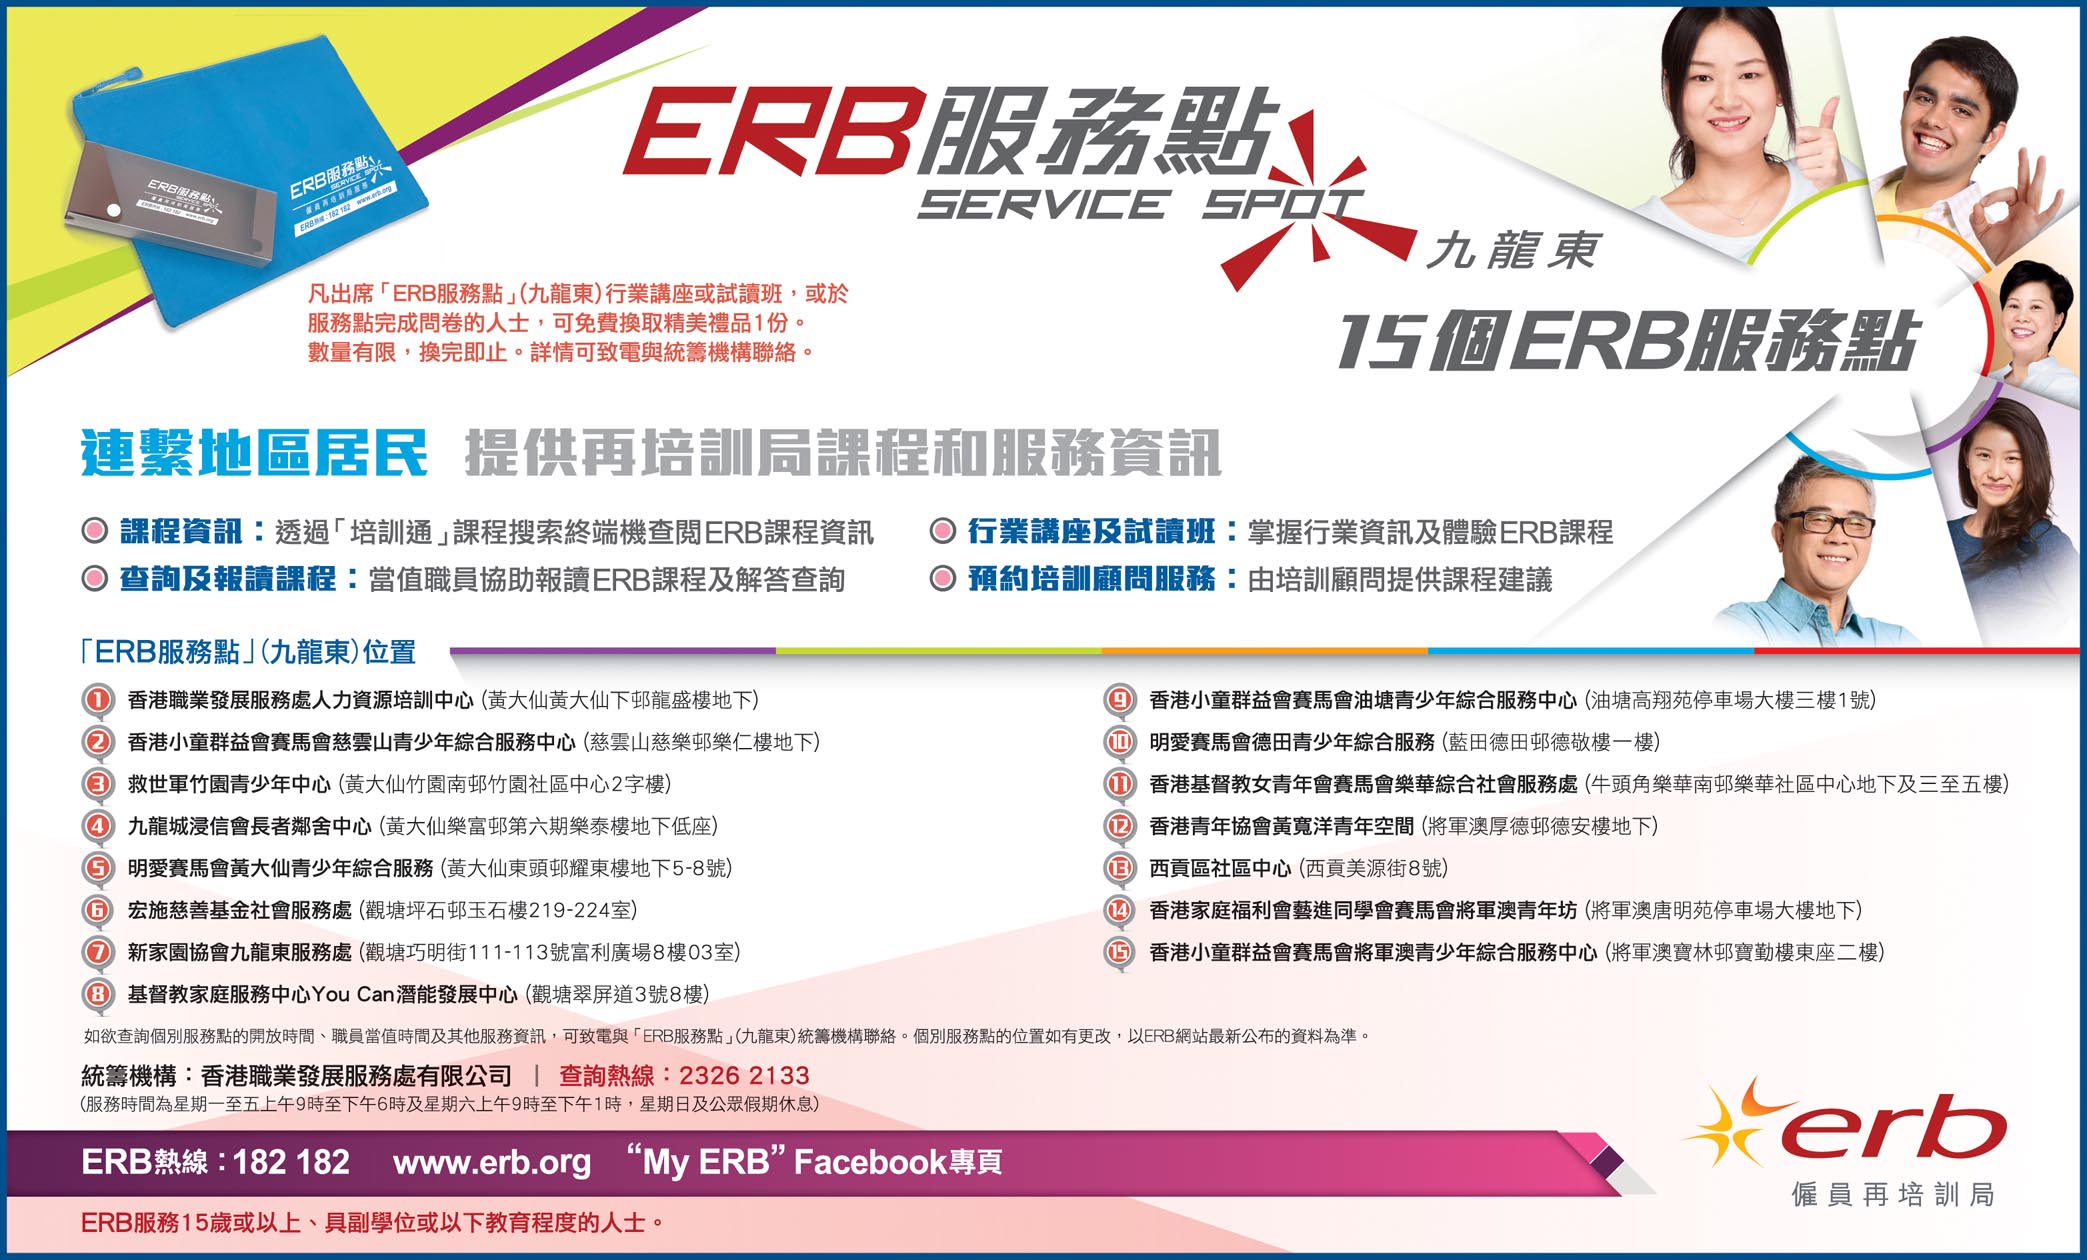 按此下载「ERB服务点」(九龙东) 报章广告图像版